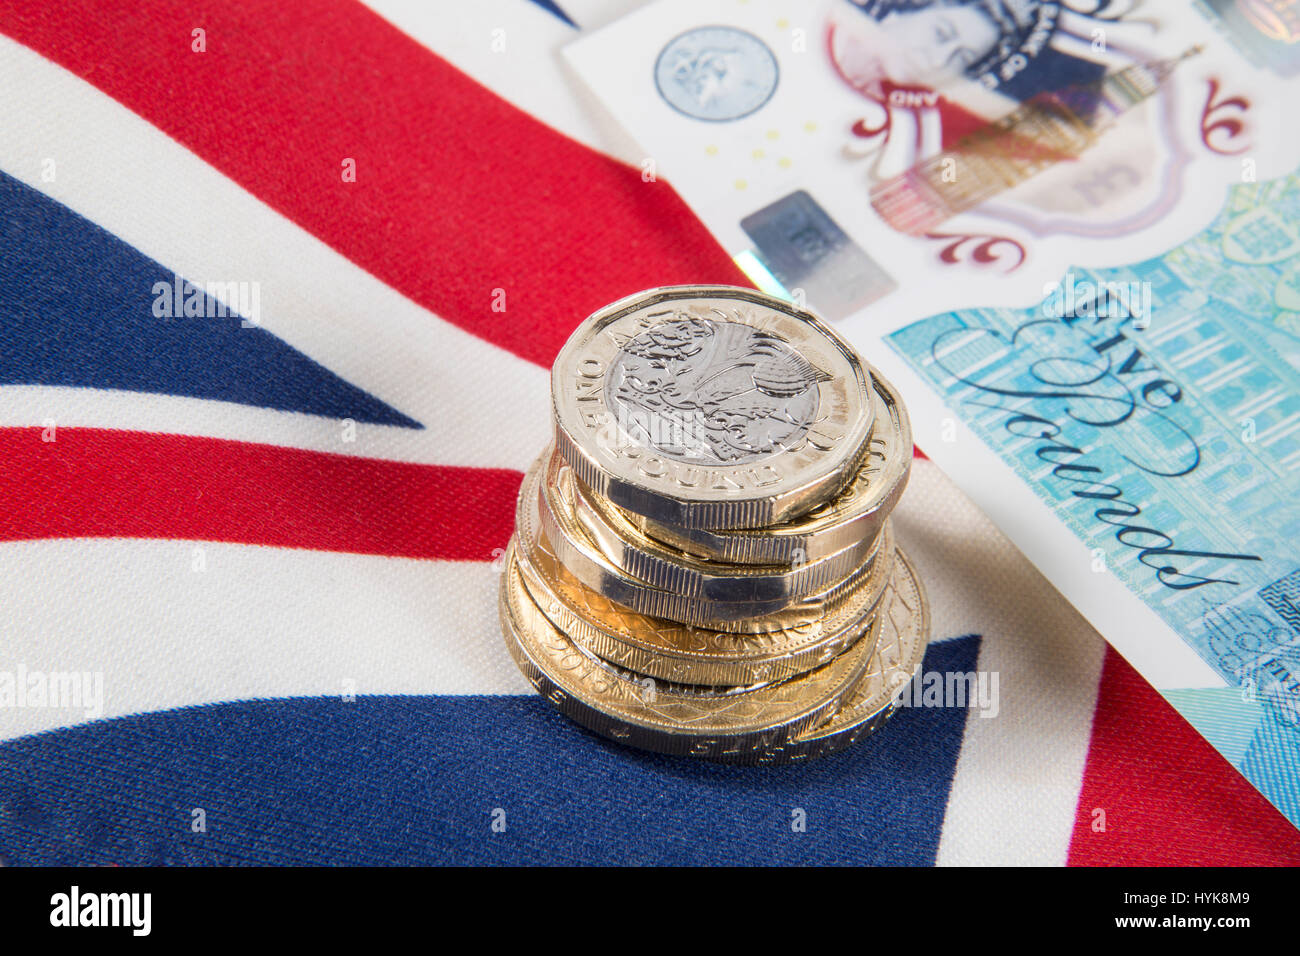 Nuevo 2016 £1 libras monedas colocado sobre una bandera Union Jack Foto de stock